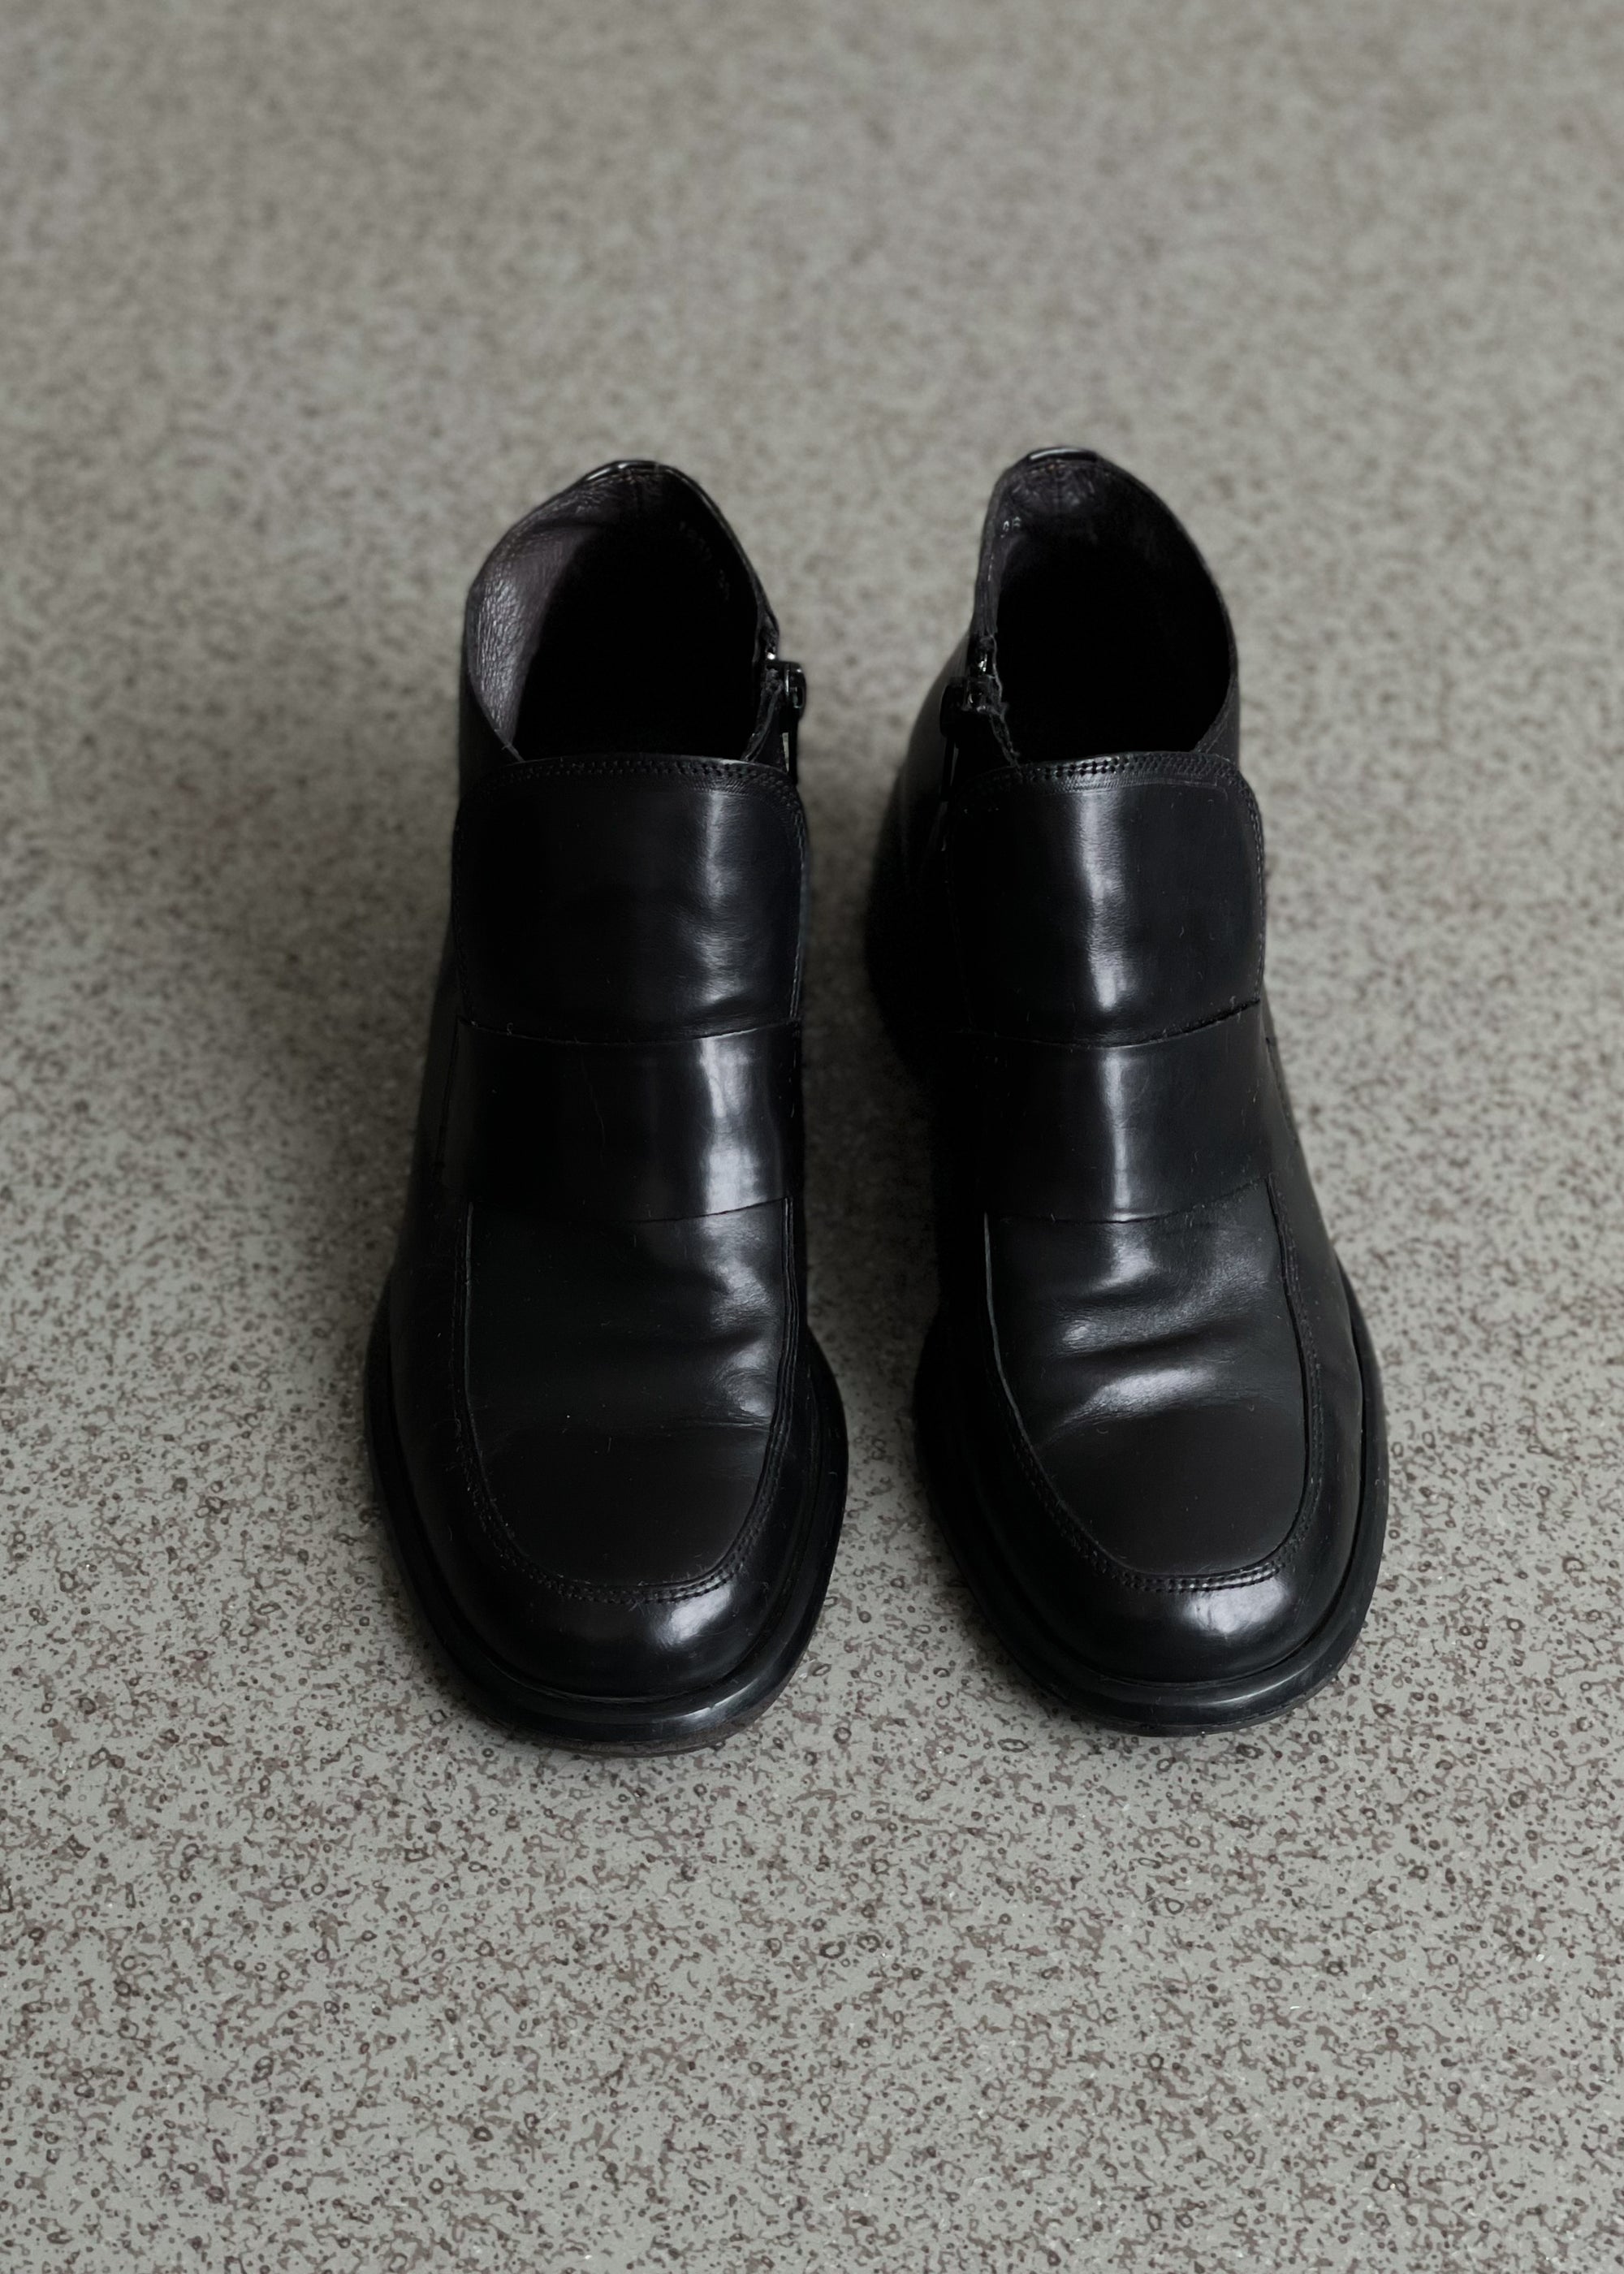 Vintage Black Shoes Size 36